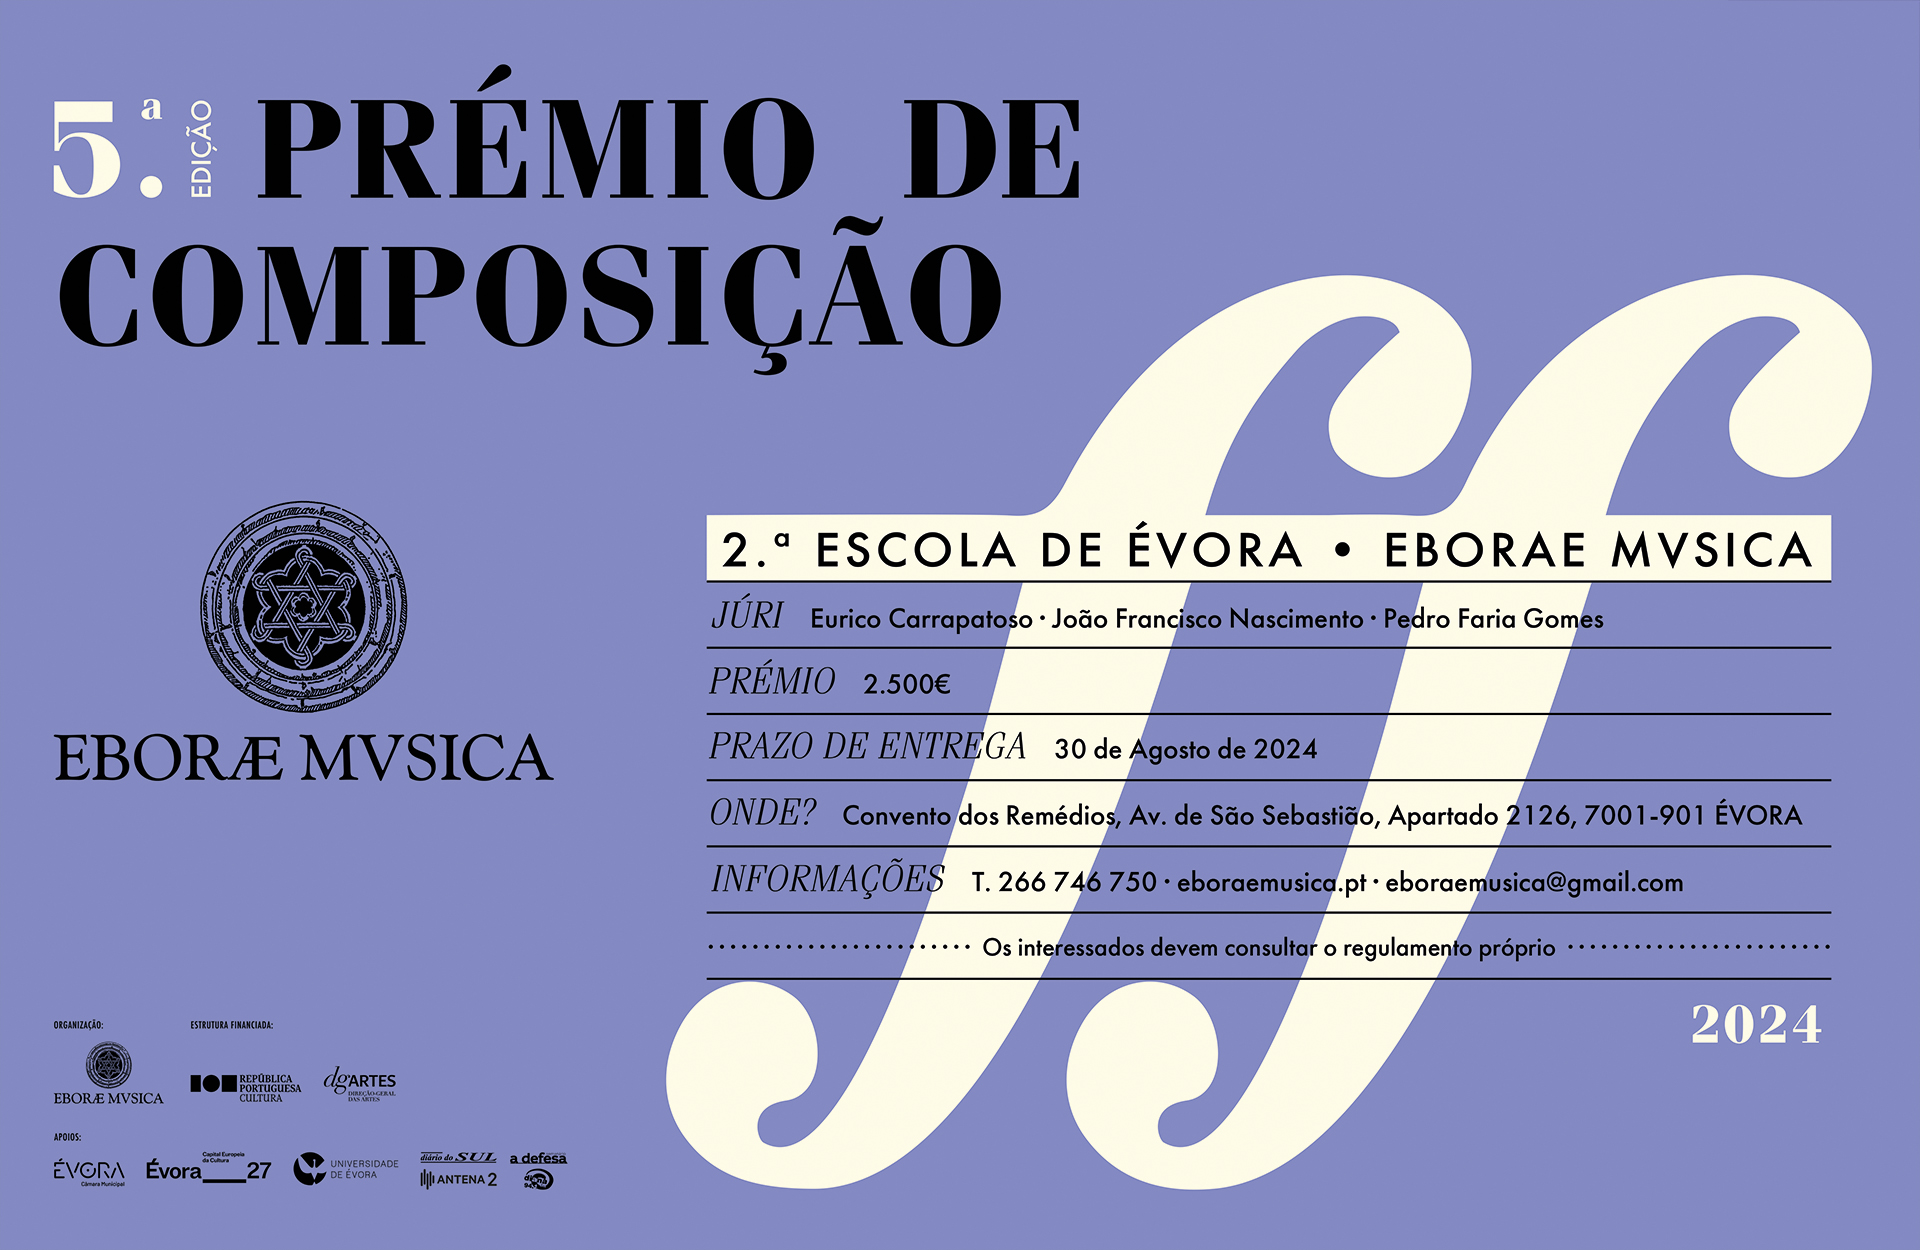 5ª edição do Prémio de Composição  “2ª Escola de Évora | Eborae Mvsica”